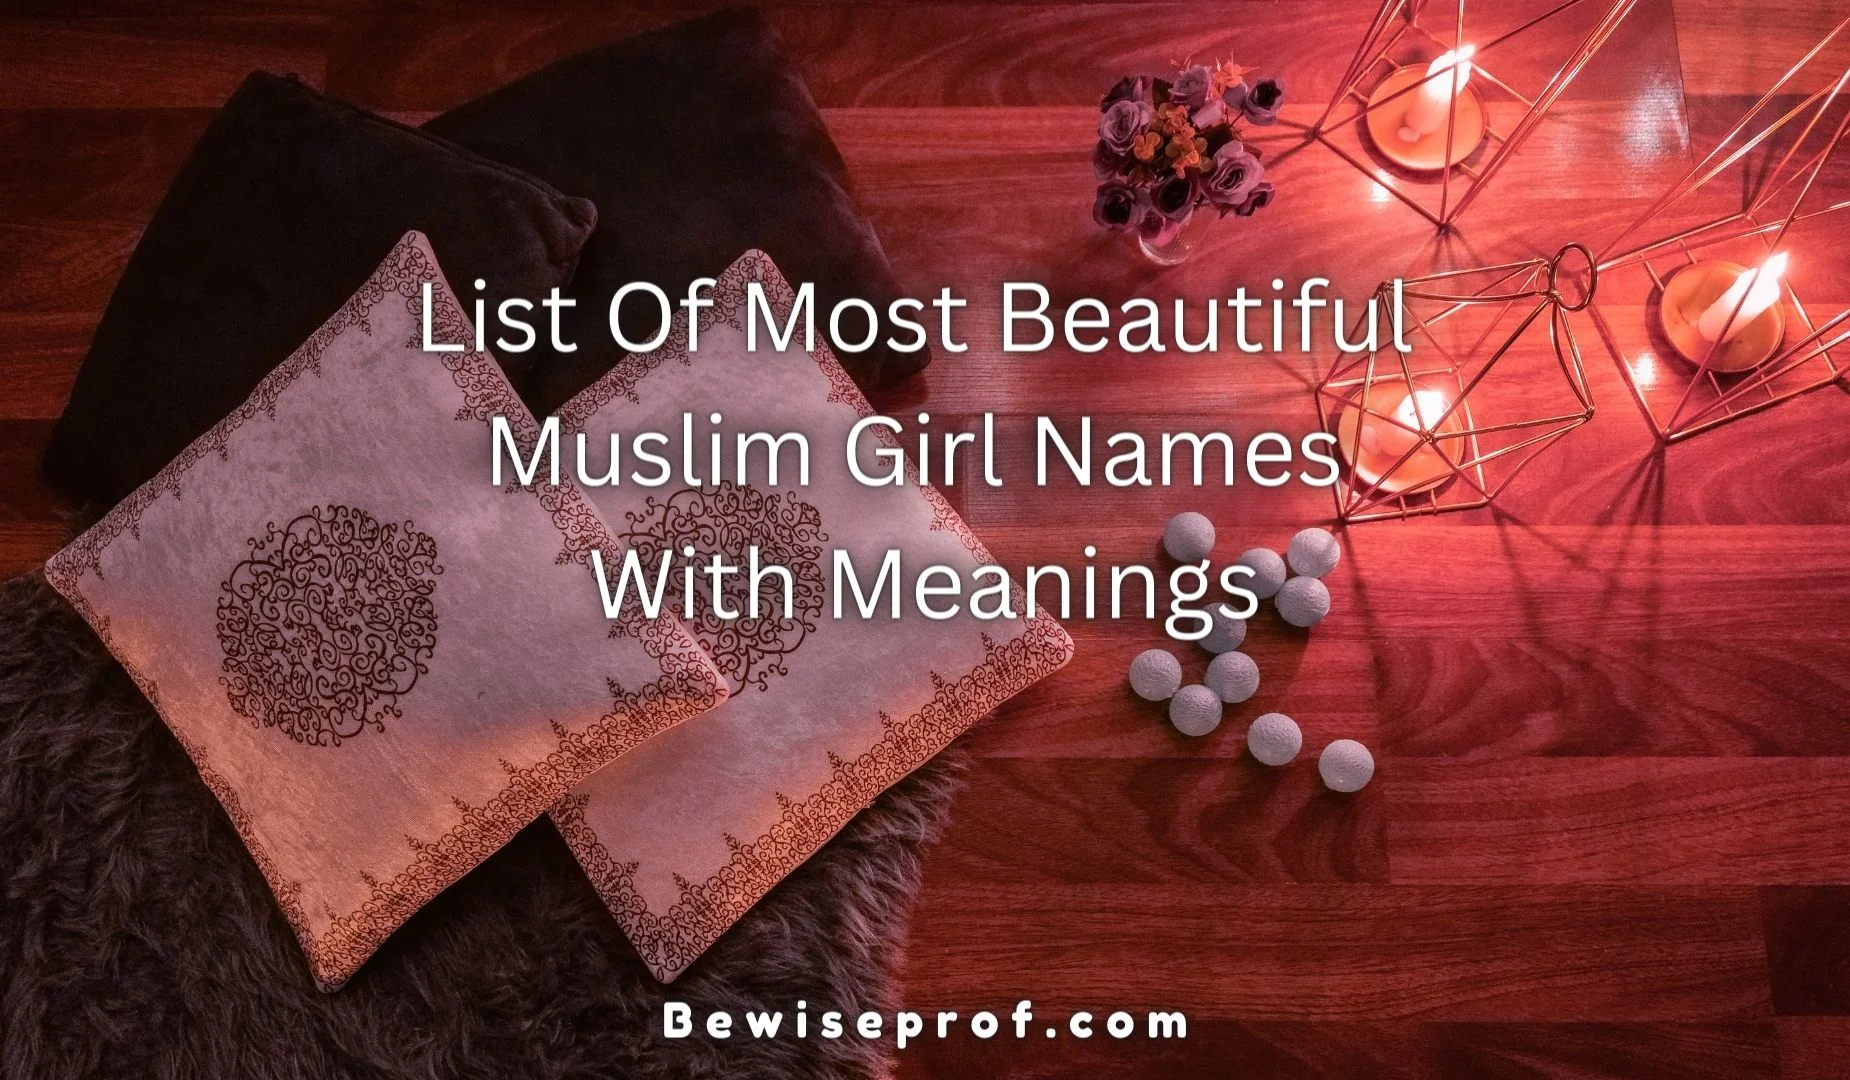 قائمة أجمل أسماء الفتاة المسلمة مع المعاني